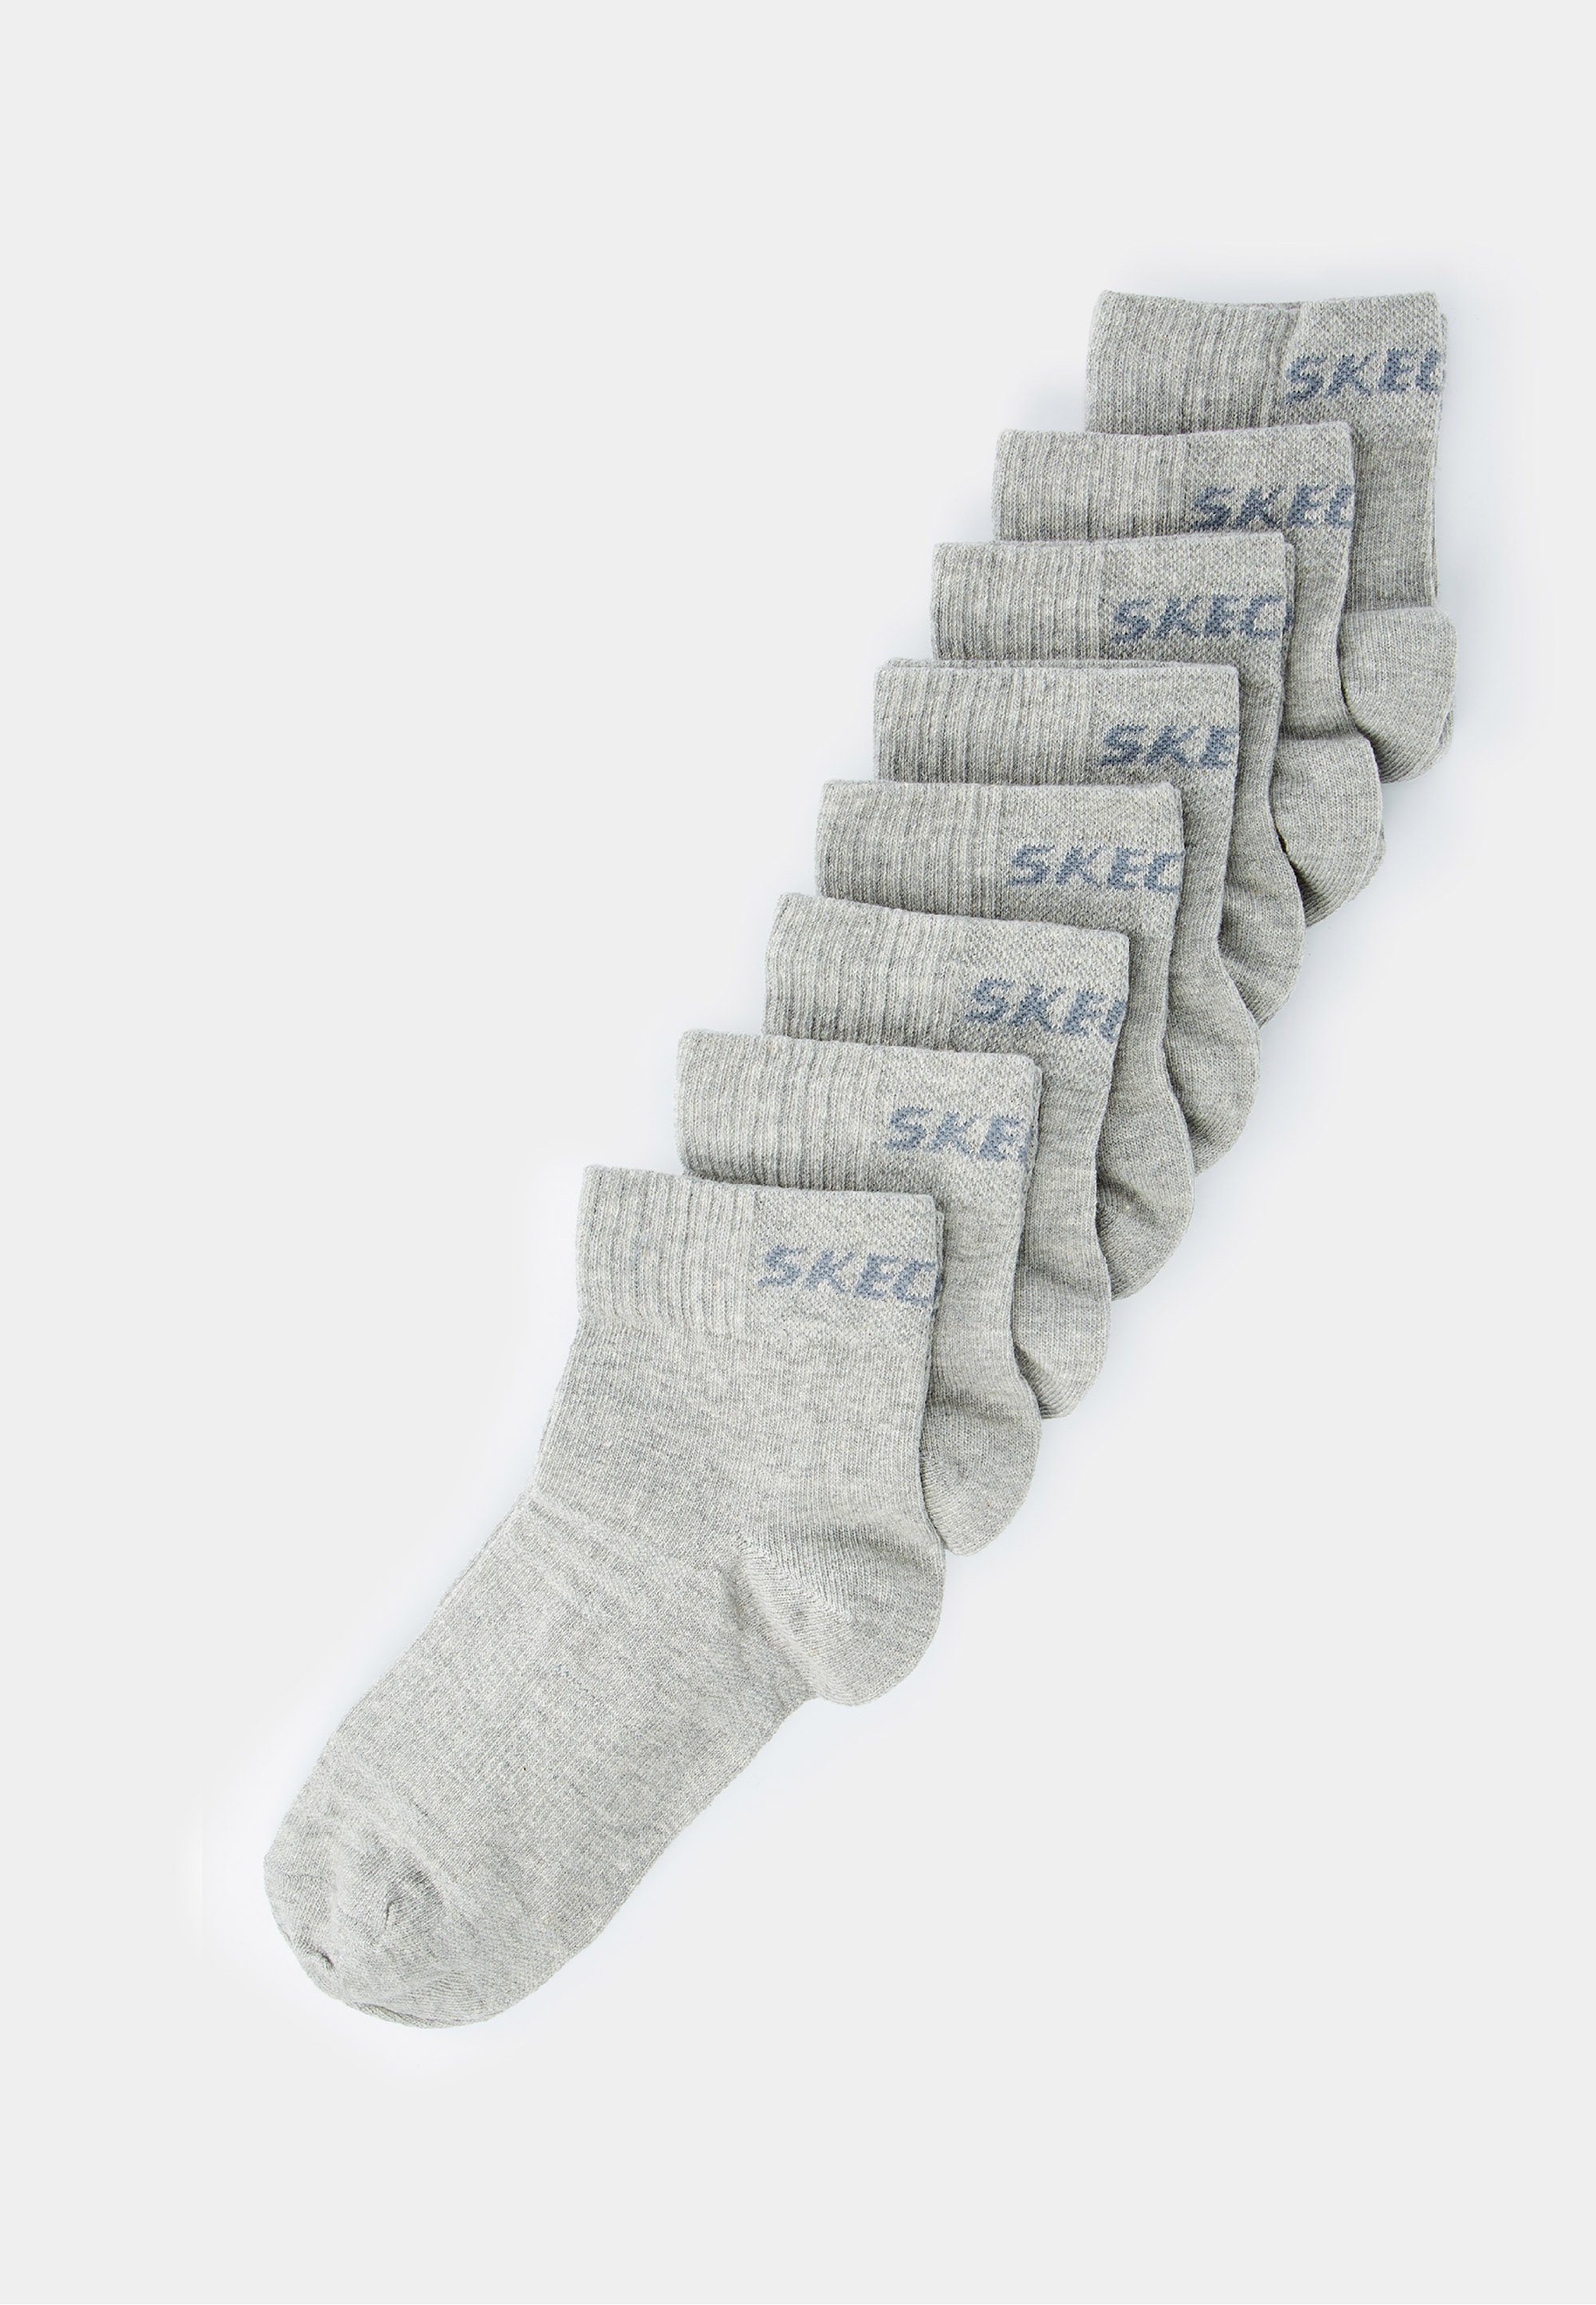 Skechers Socken (8-Paar) im 8er-Pack mit Markenschriftzug meliert schickem grau